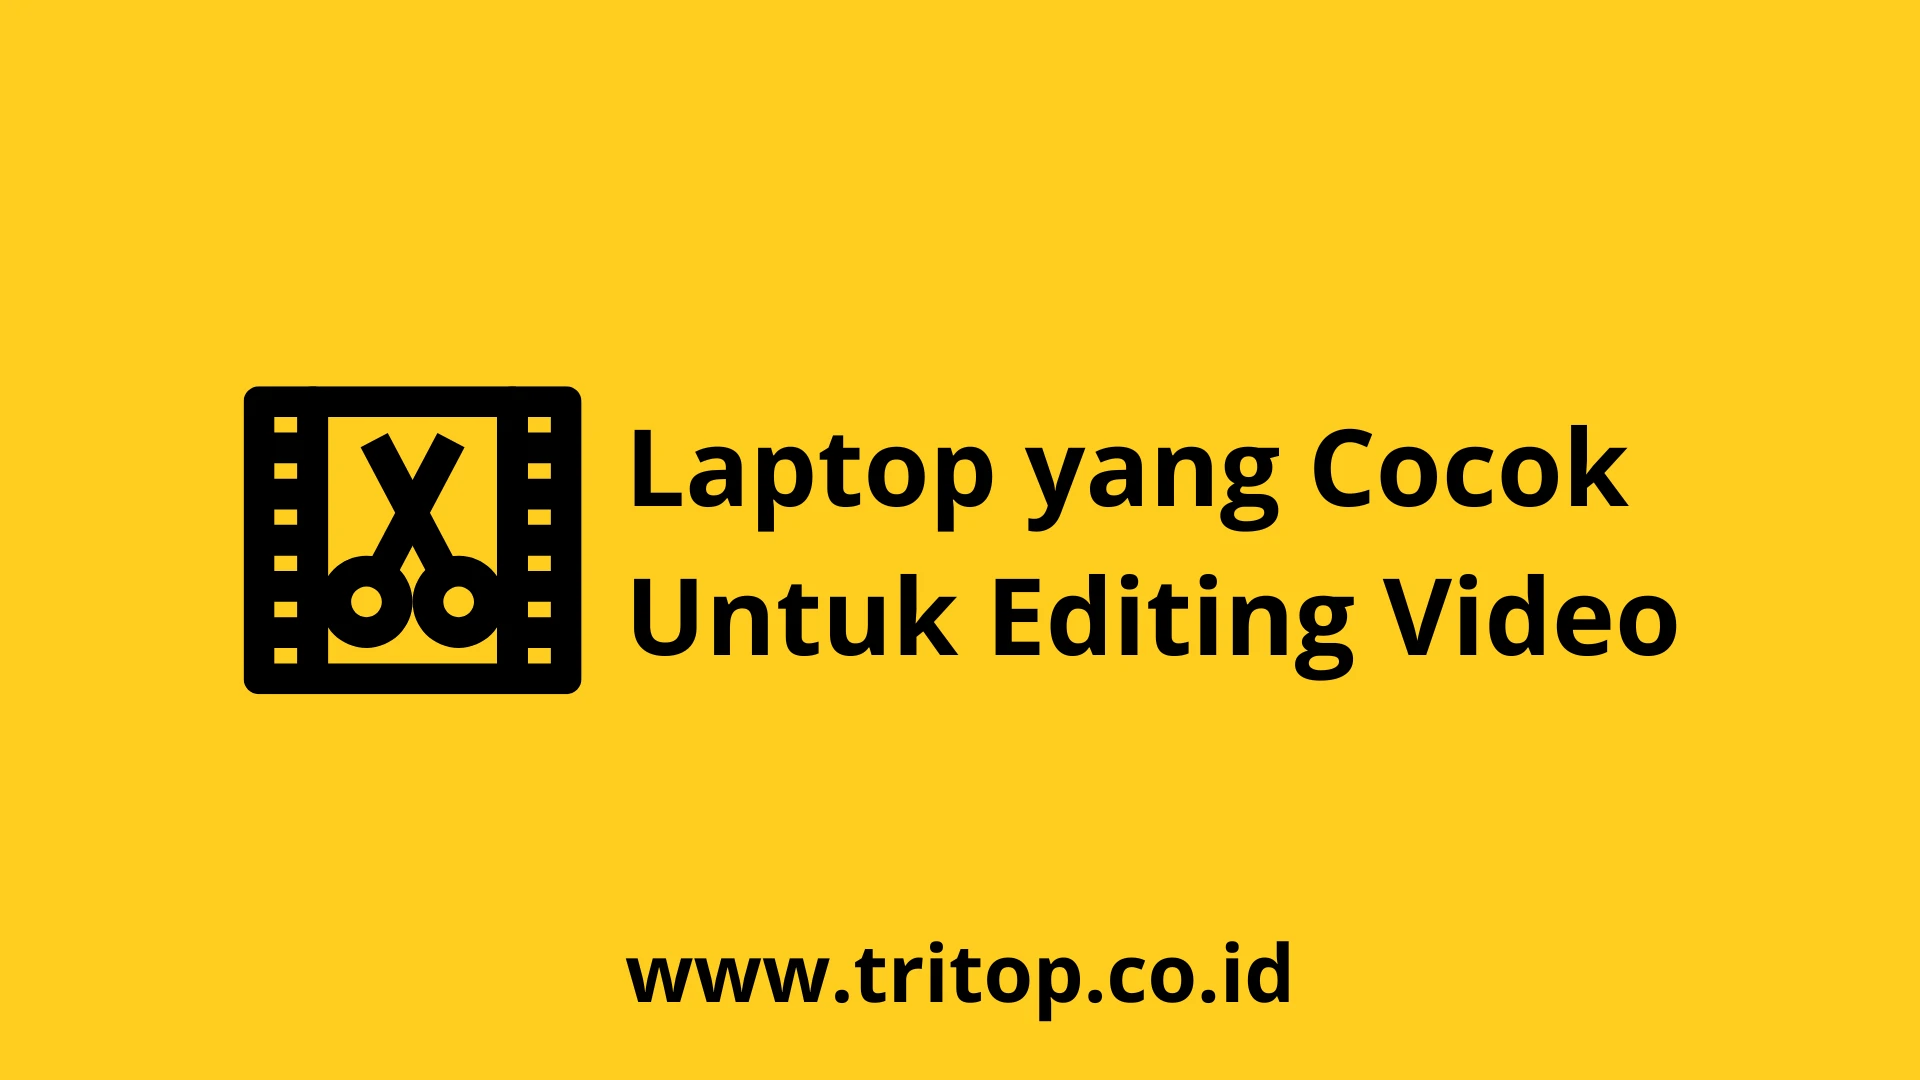 Laptop yang Cocok Untuk Editing Video Tritop.co.id